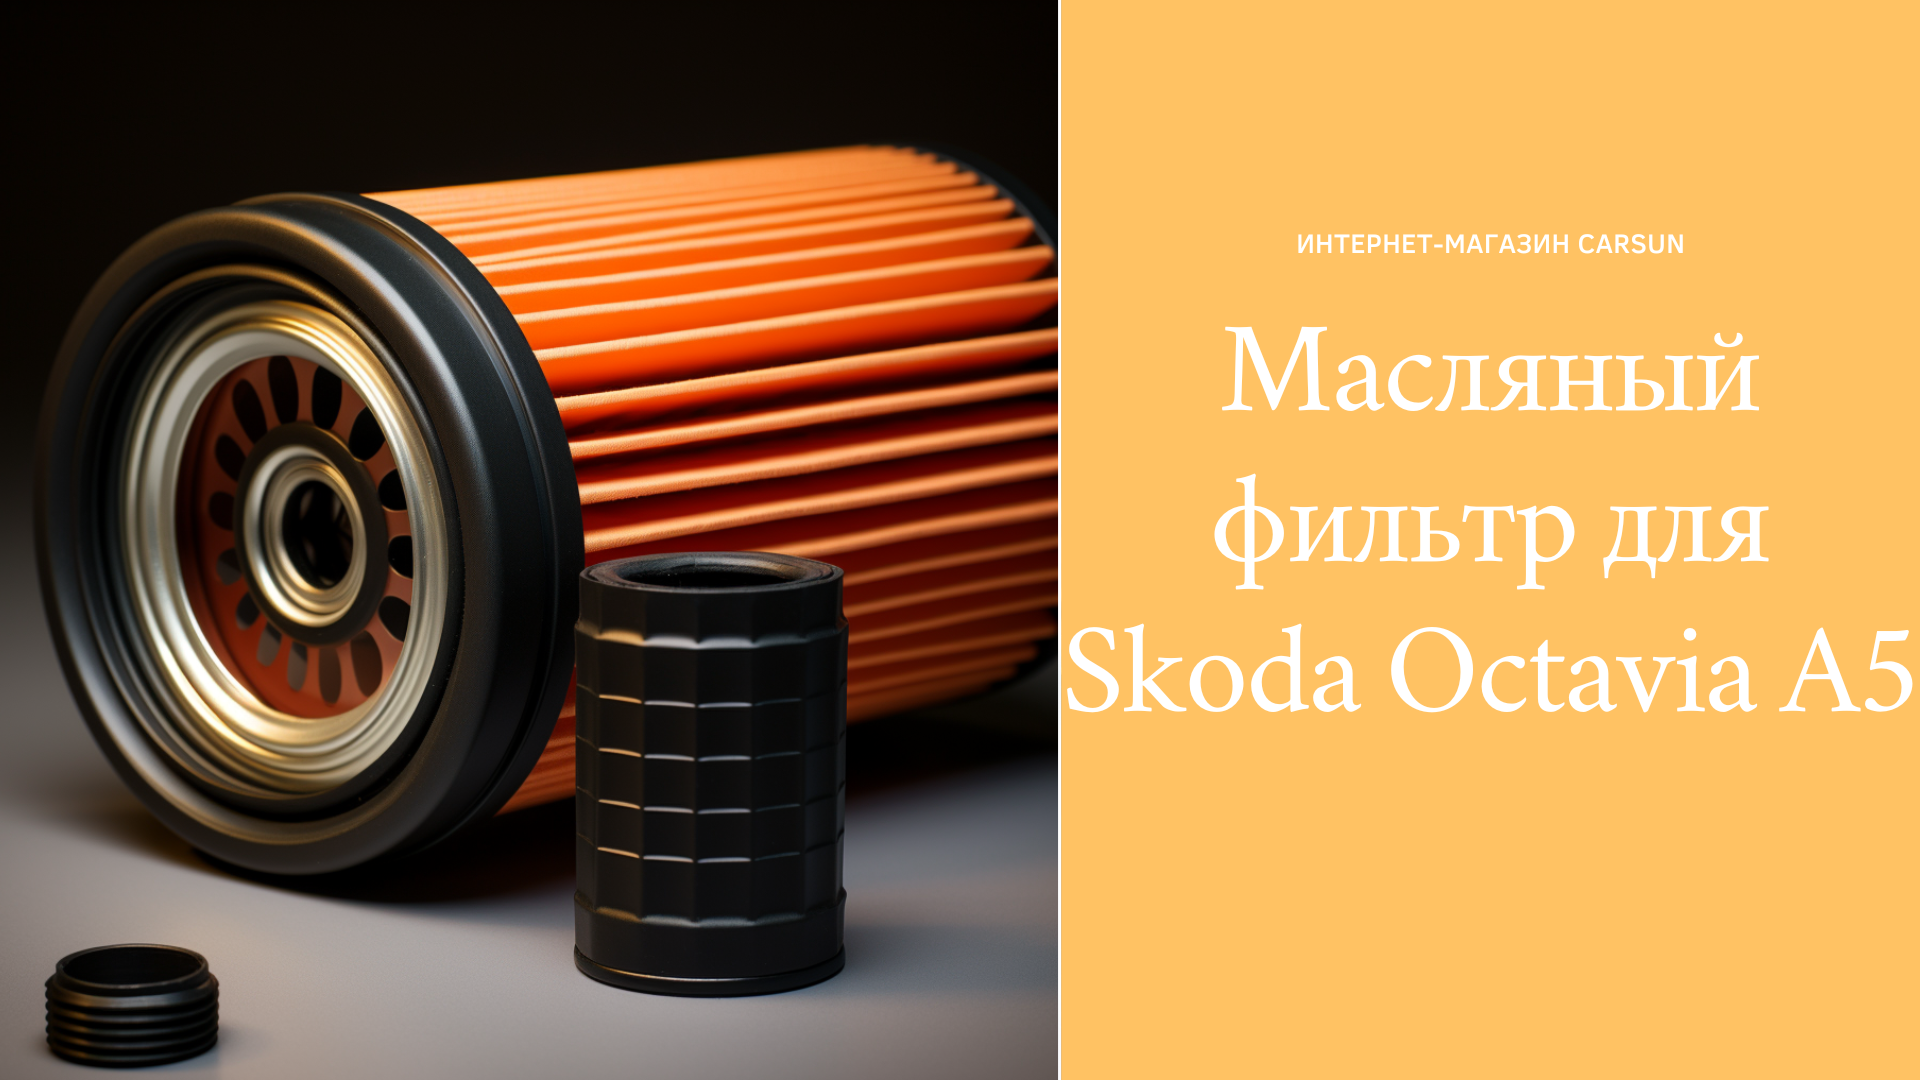 масляный фильтр Skoda Octavia A5 1.6 mpi, масляный фильтр шкода октавия а5 1.4 mpi, купить масляный фильтр skoda octavia A5 1.8 tsi